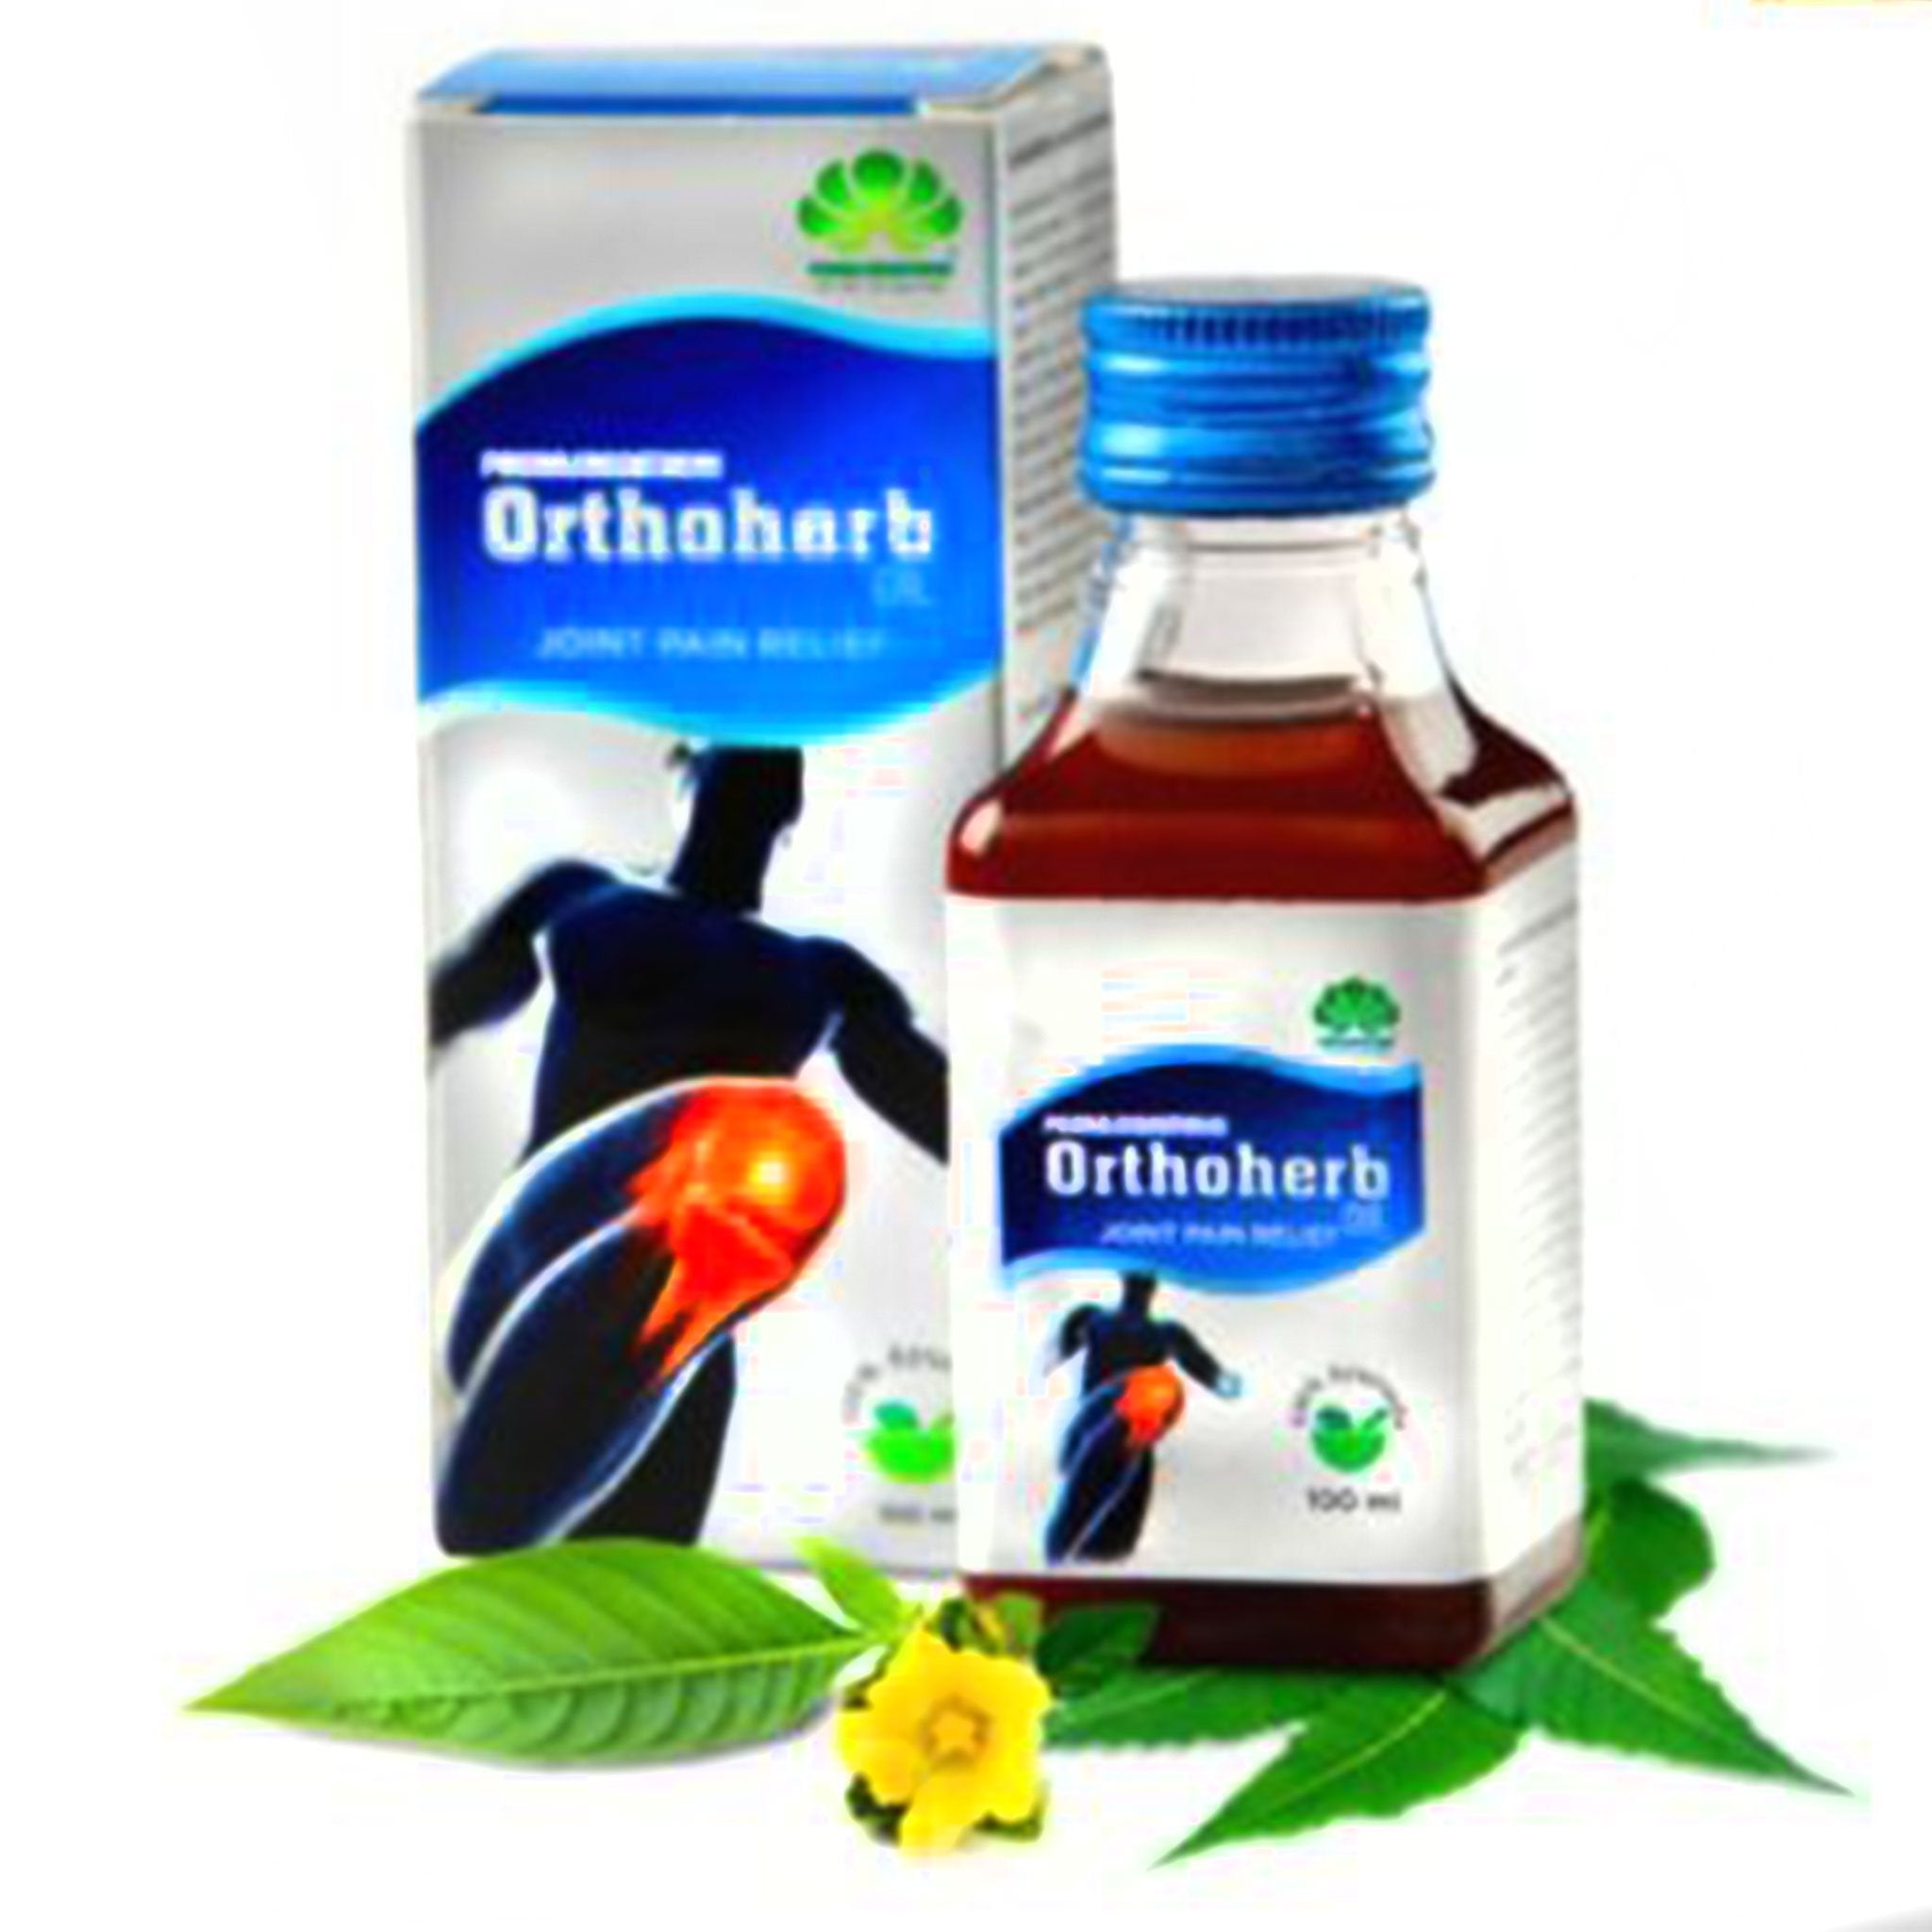 Pankajakasthuri Orthoherb Oil 100ml Value Pack of 3 